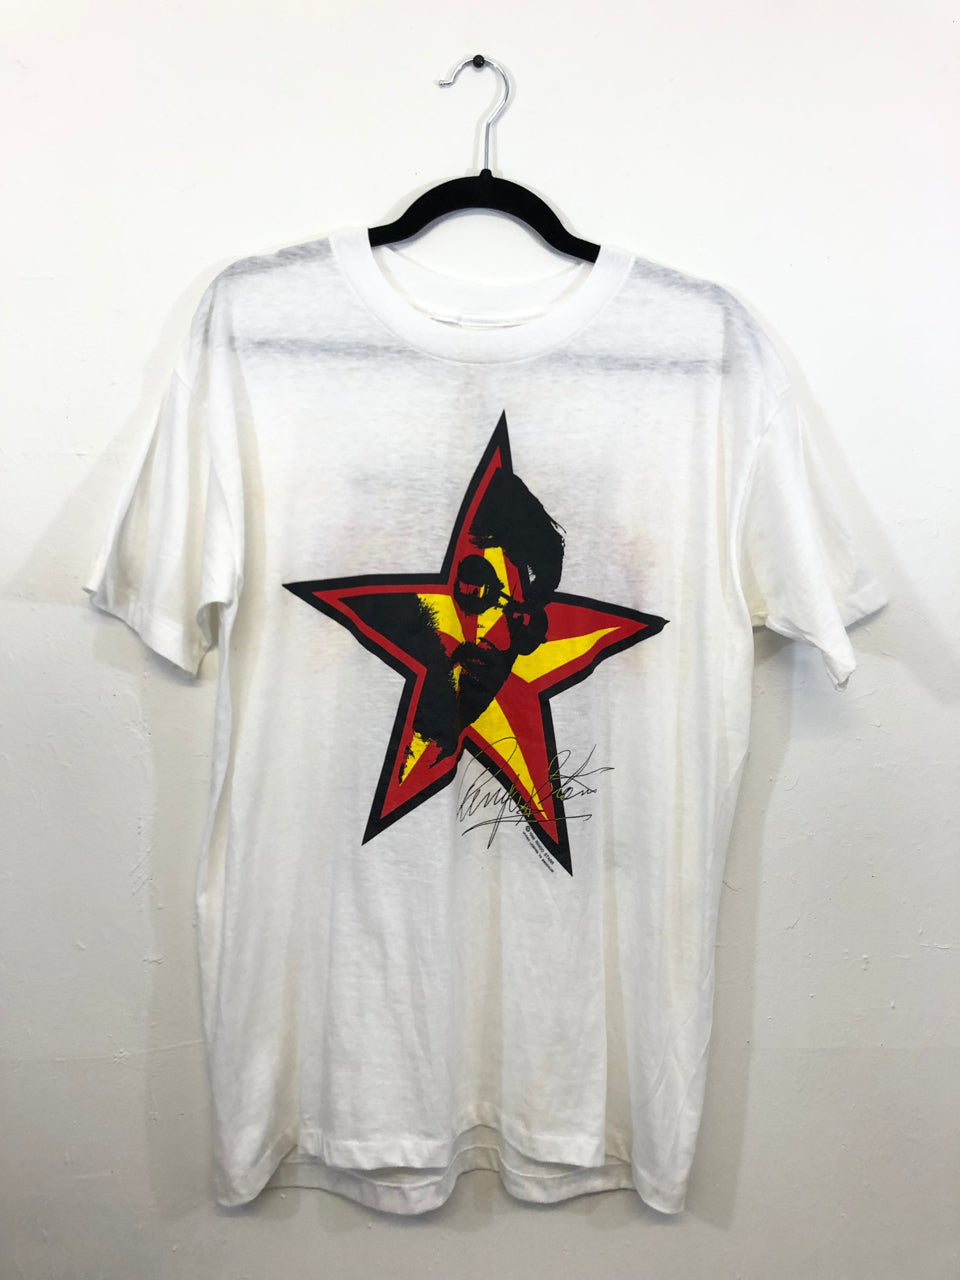 Ringo Starr Summer Tour '89 T-Shirt